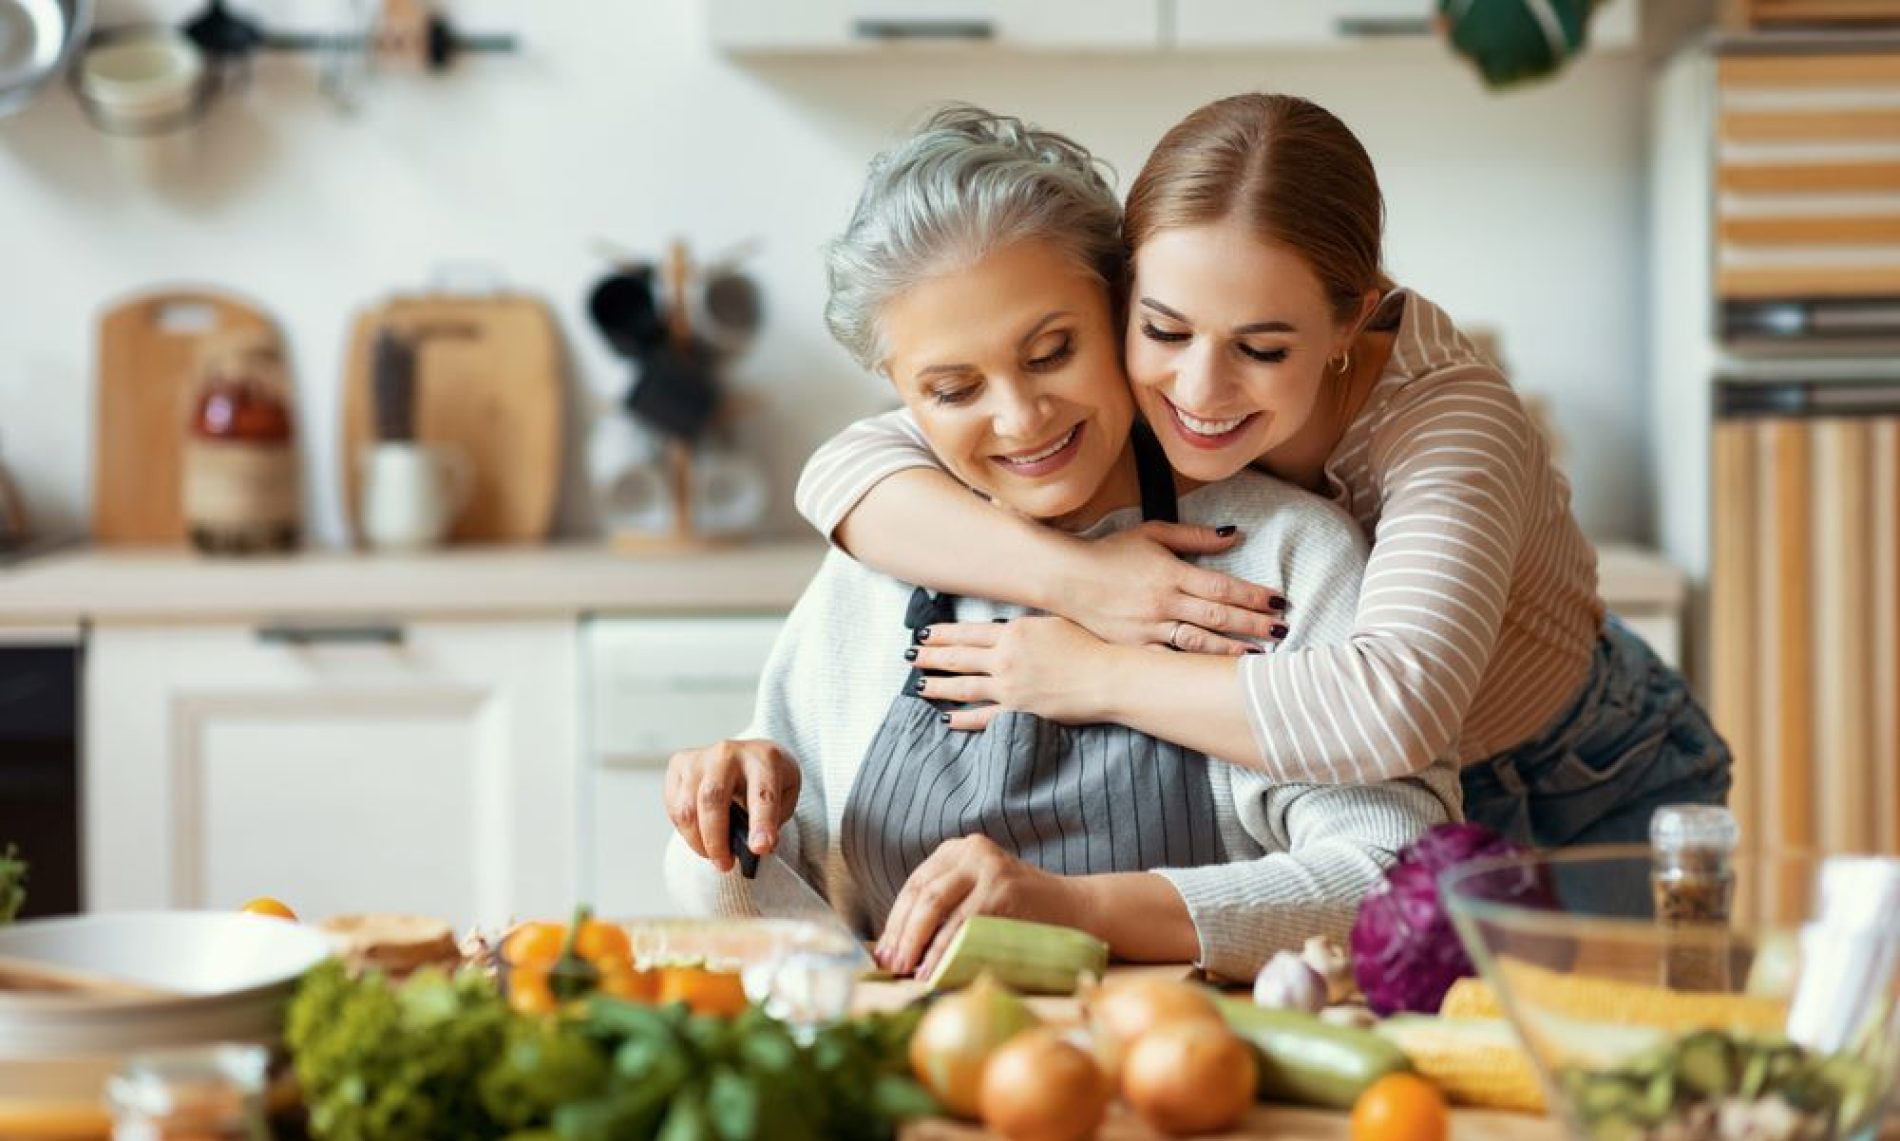 La salud empieza por la casa: tips para adoptar hábitos saludables desde el hogar